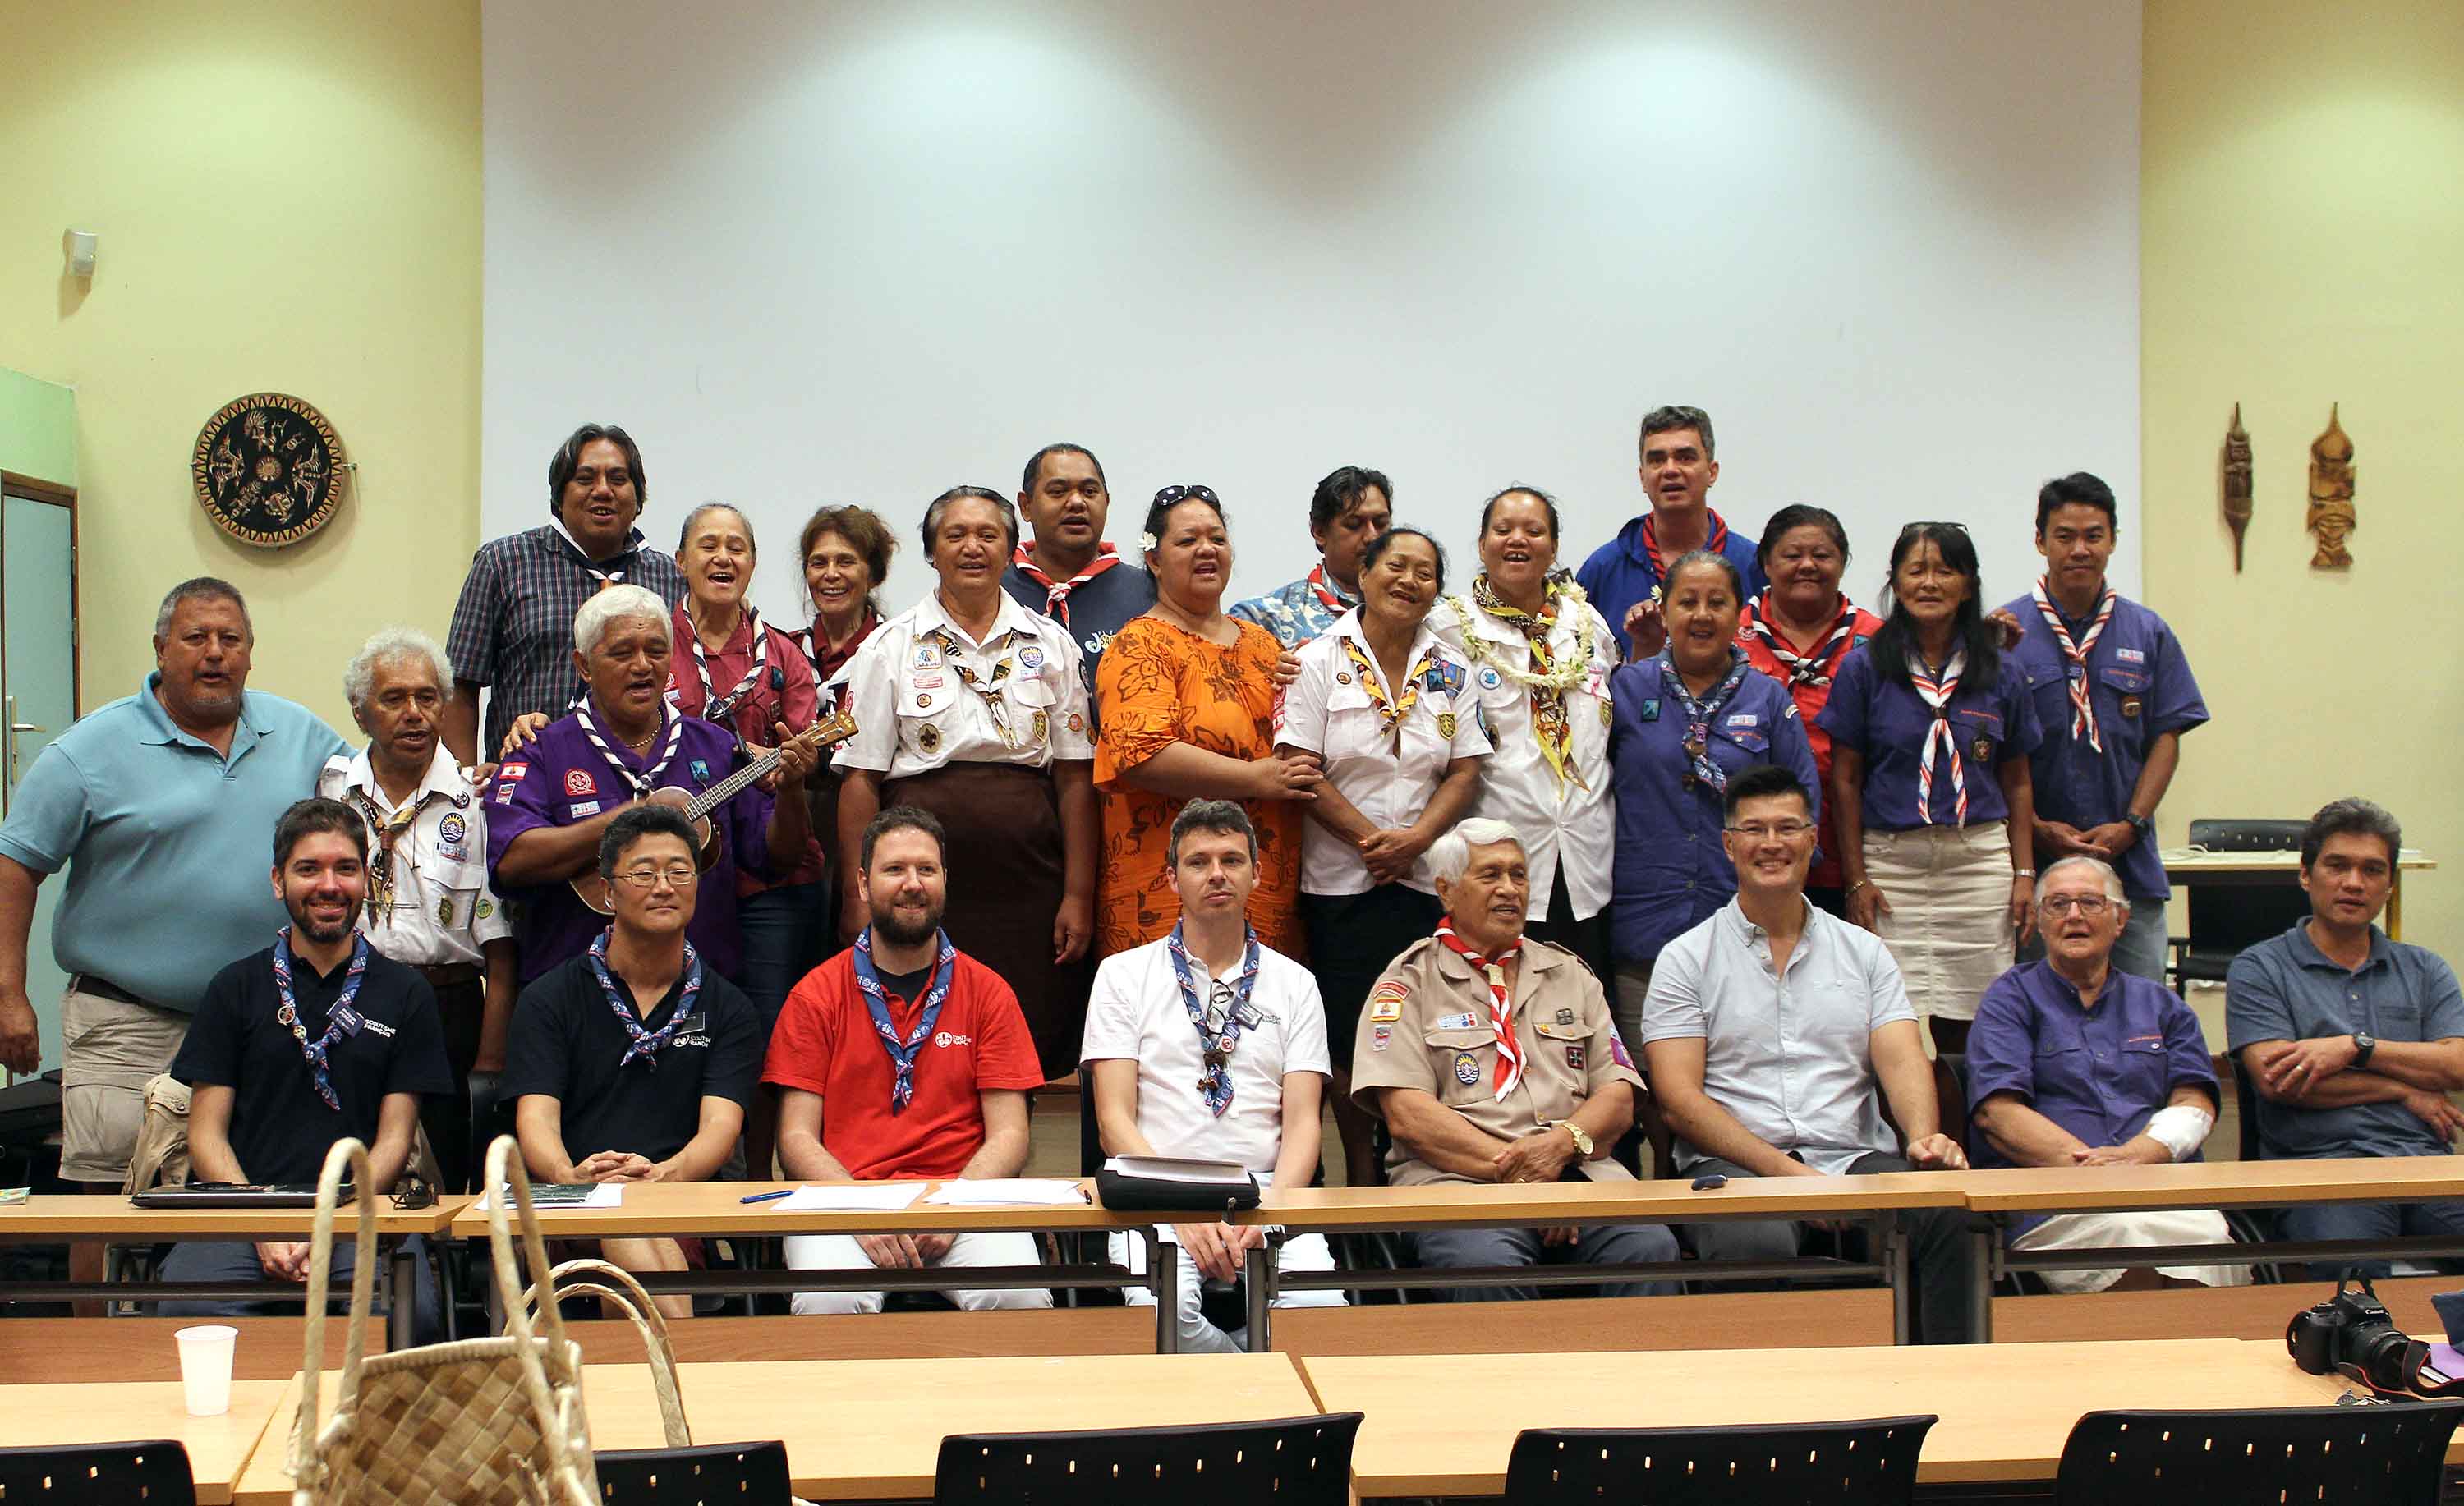 Les scouts polynésiens se rapprochent des Scouts de France